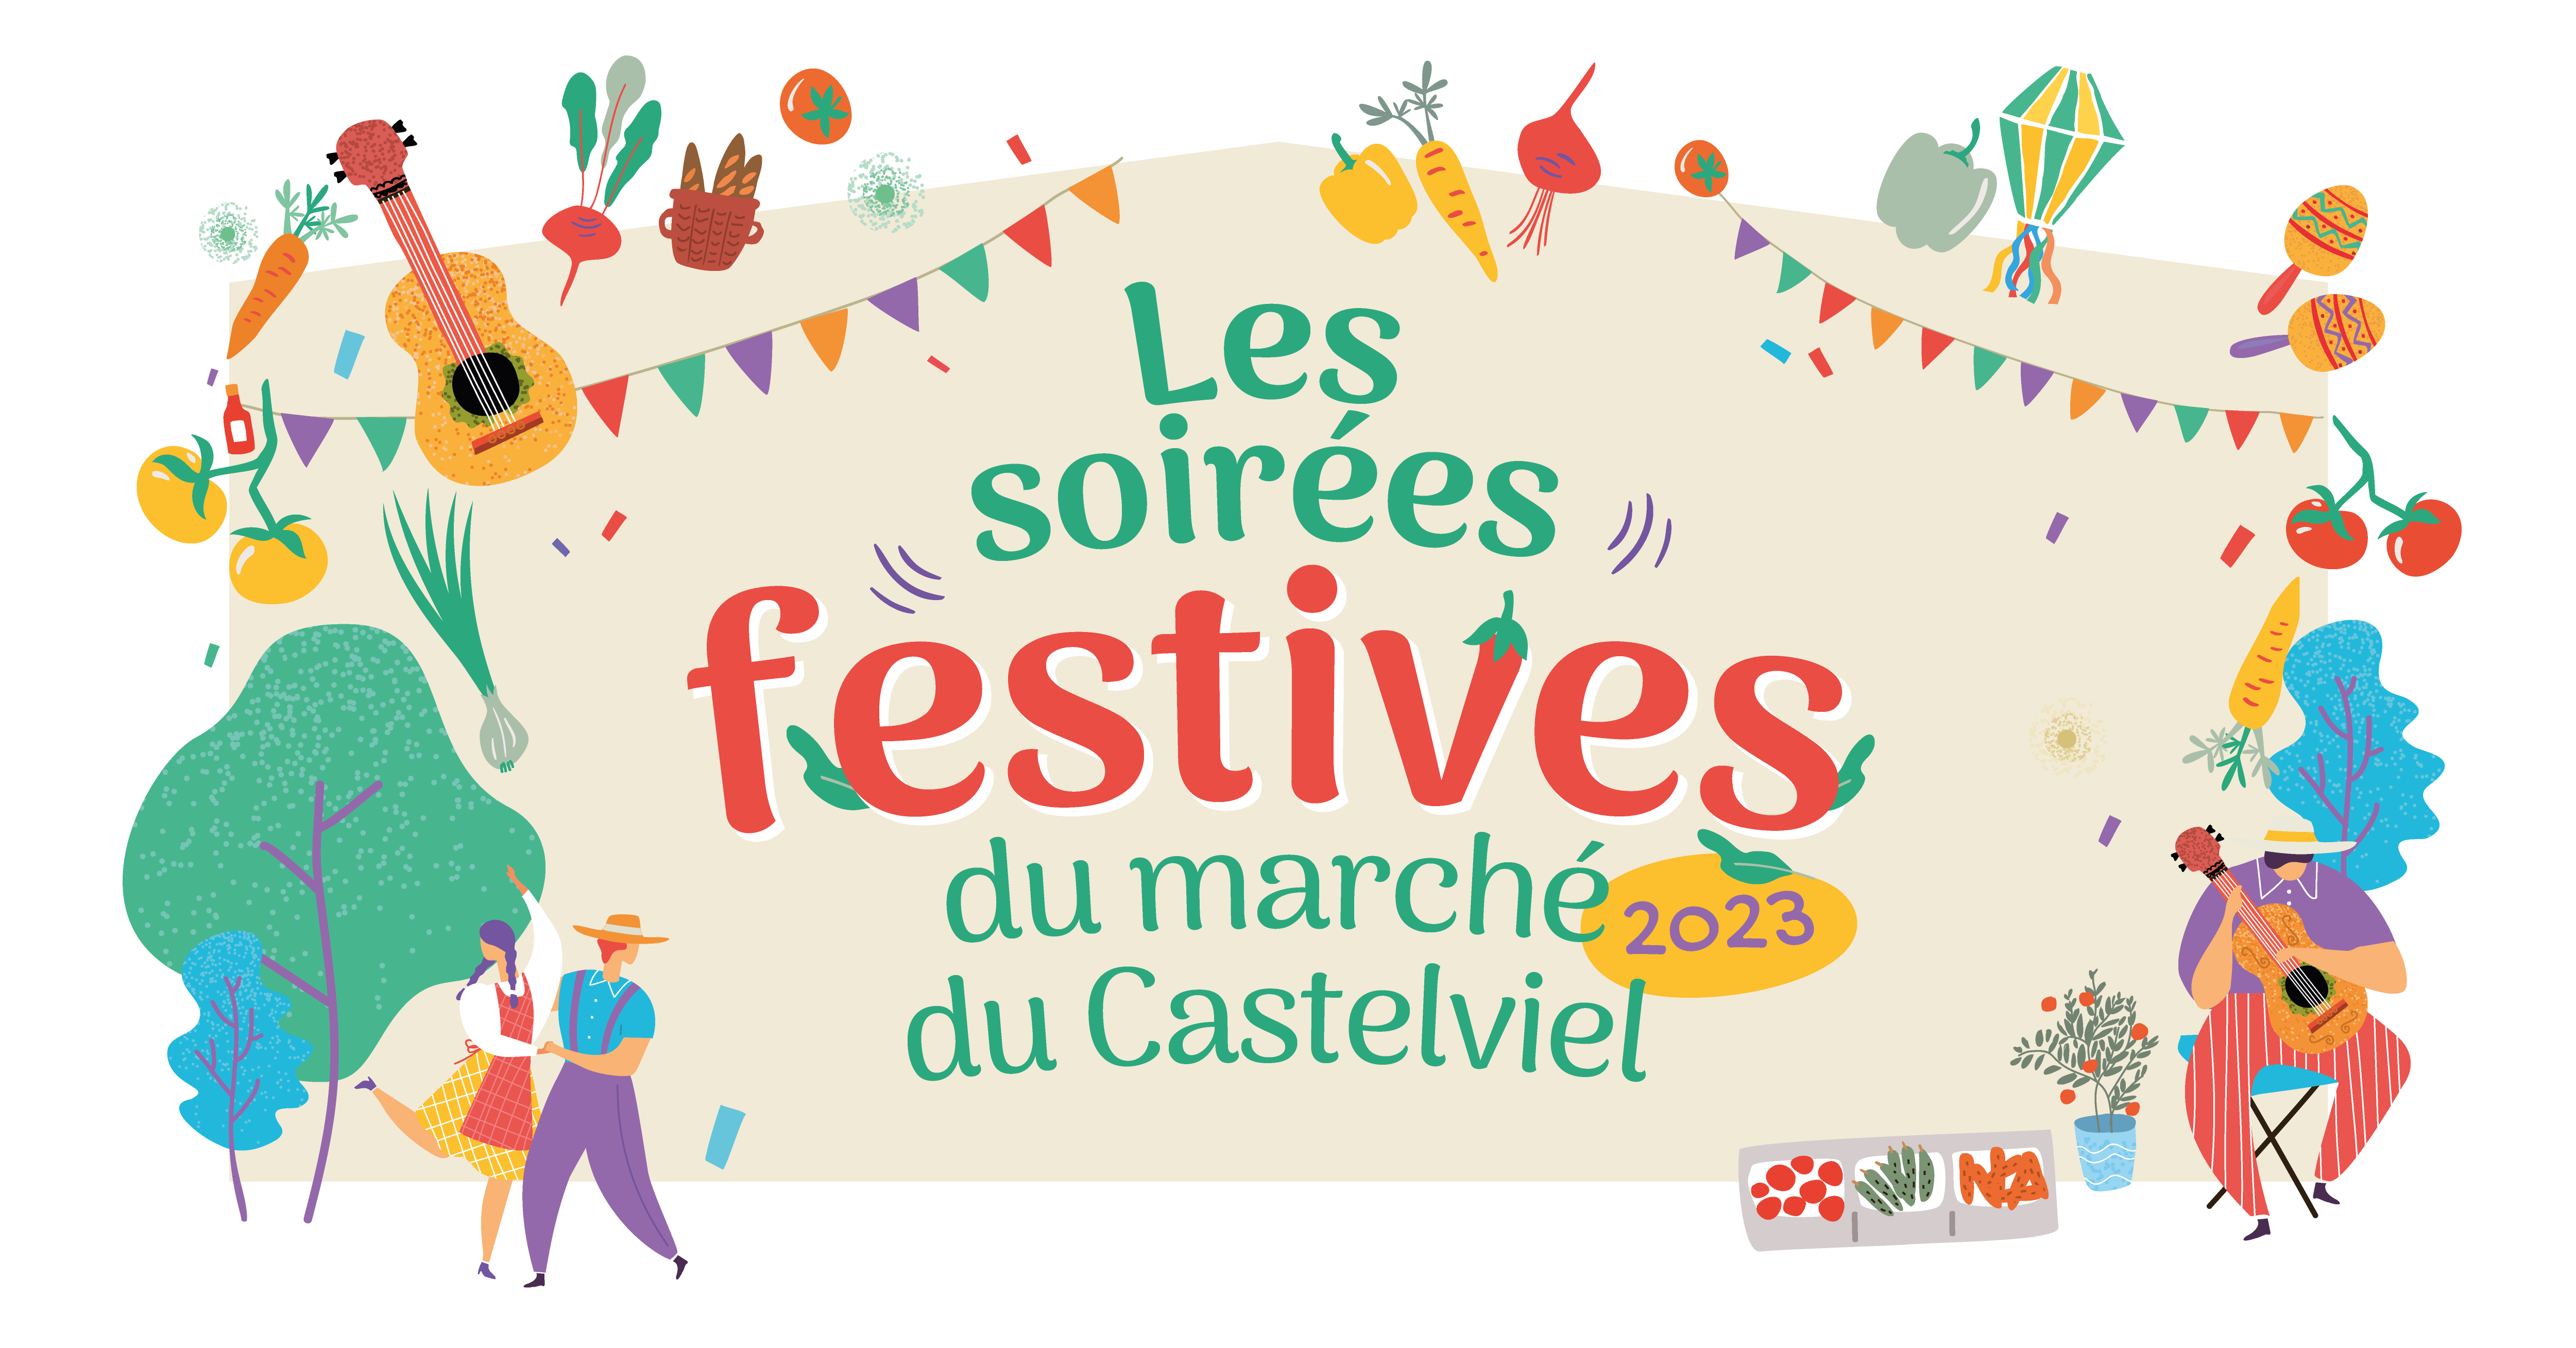 2e édition des soirées festives du marché du Castelviel